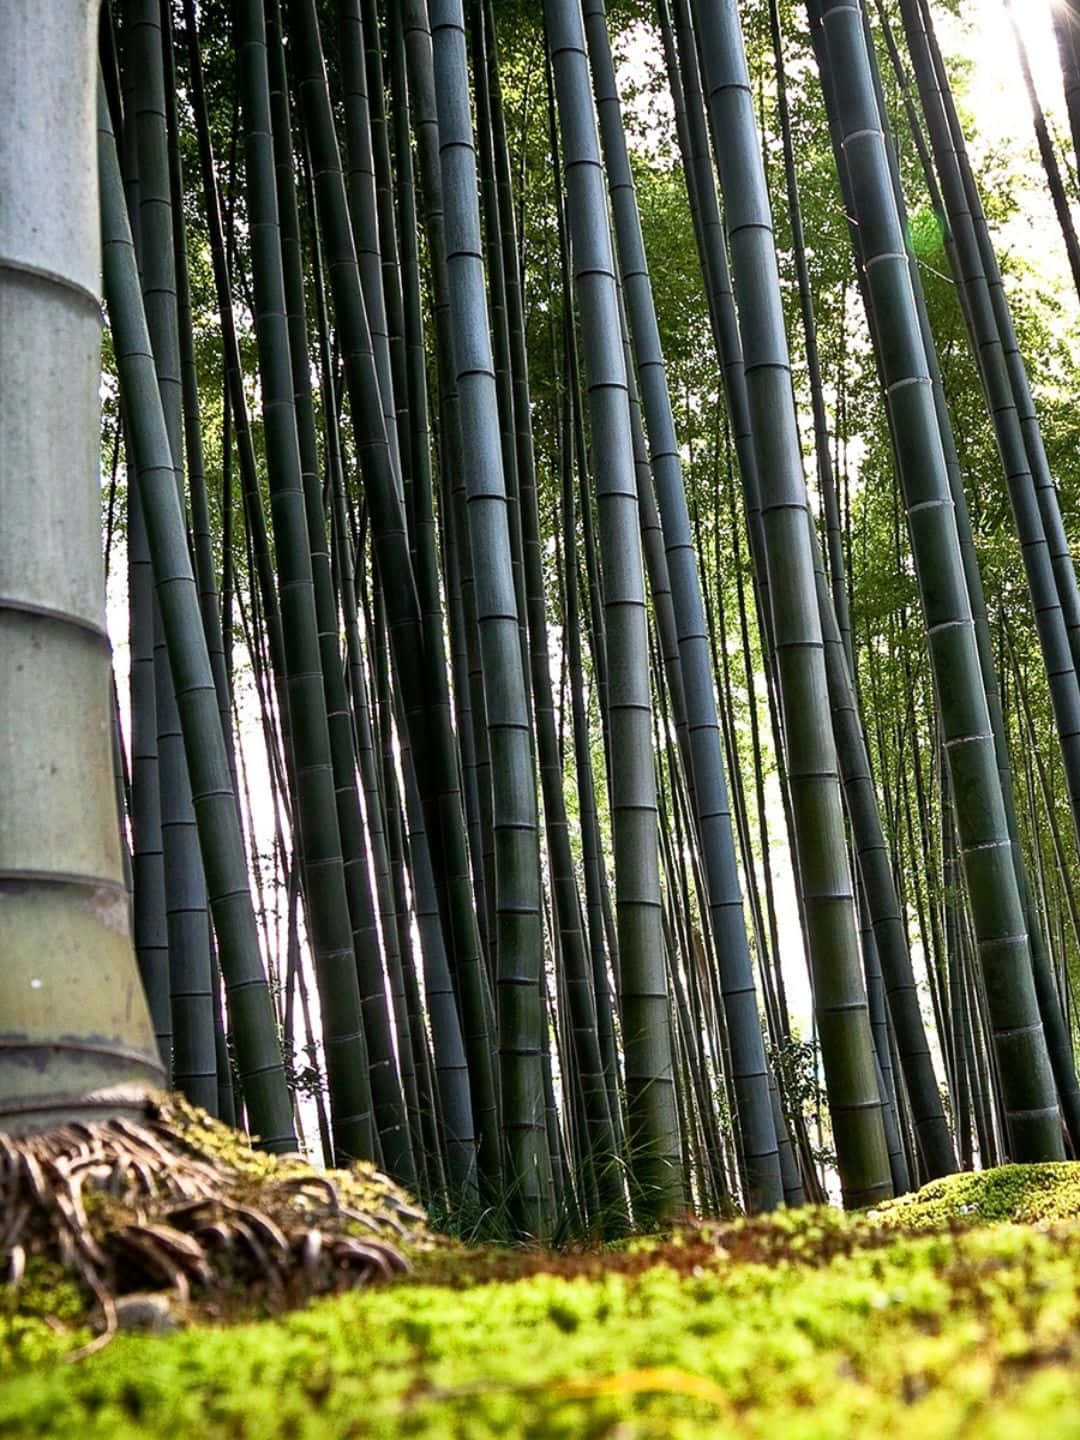 1440p Bamboo Background Ground Shot